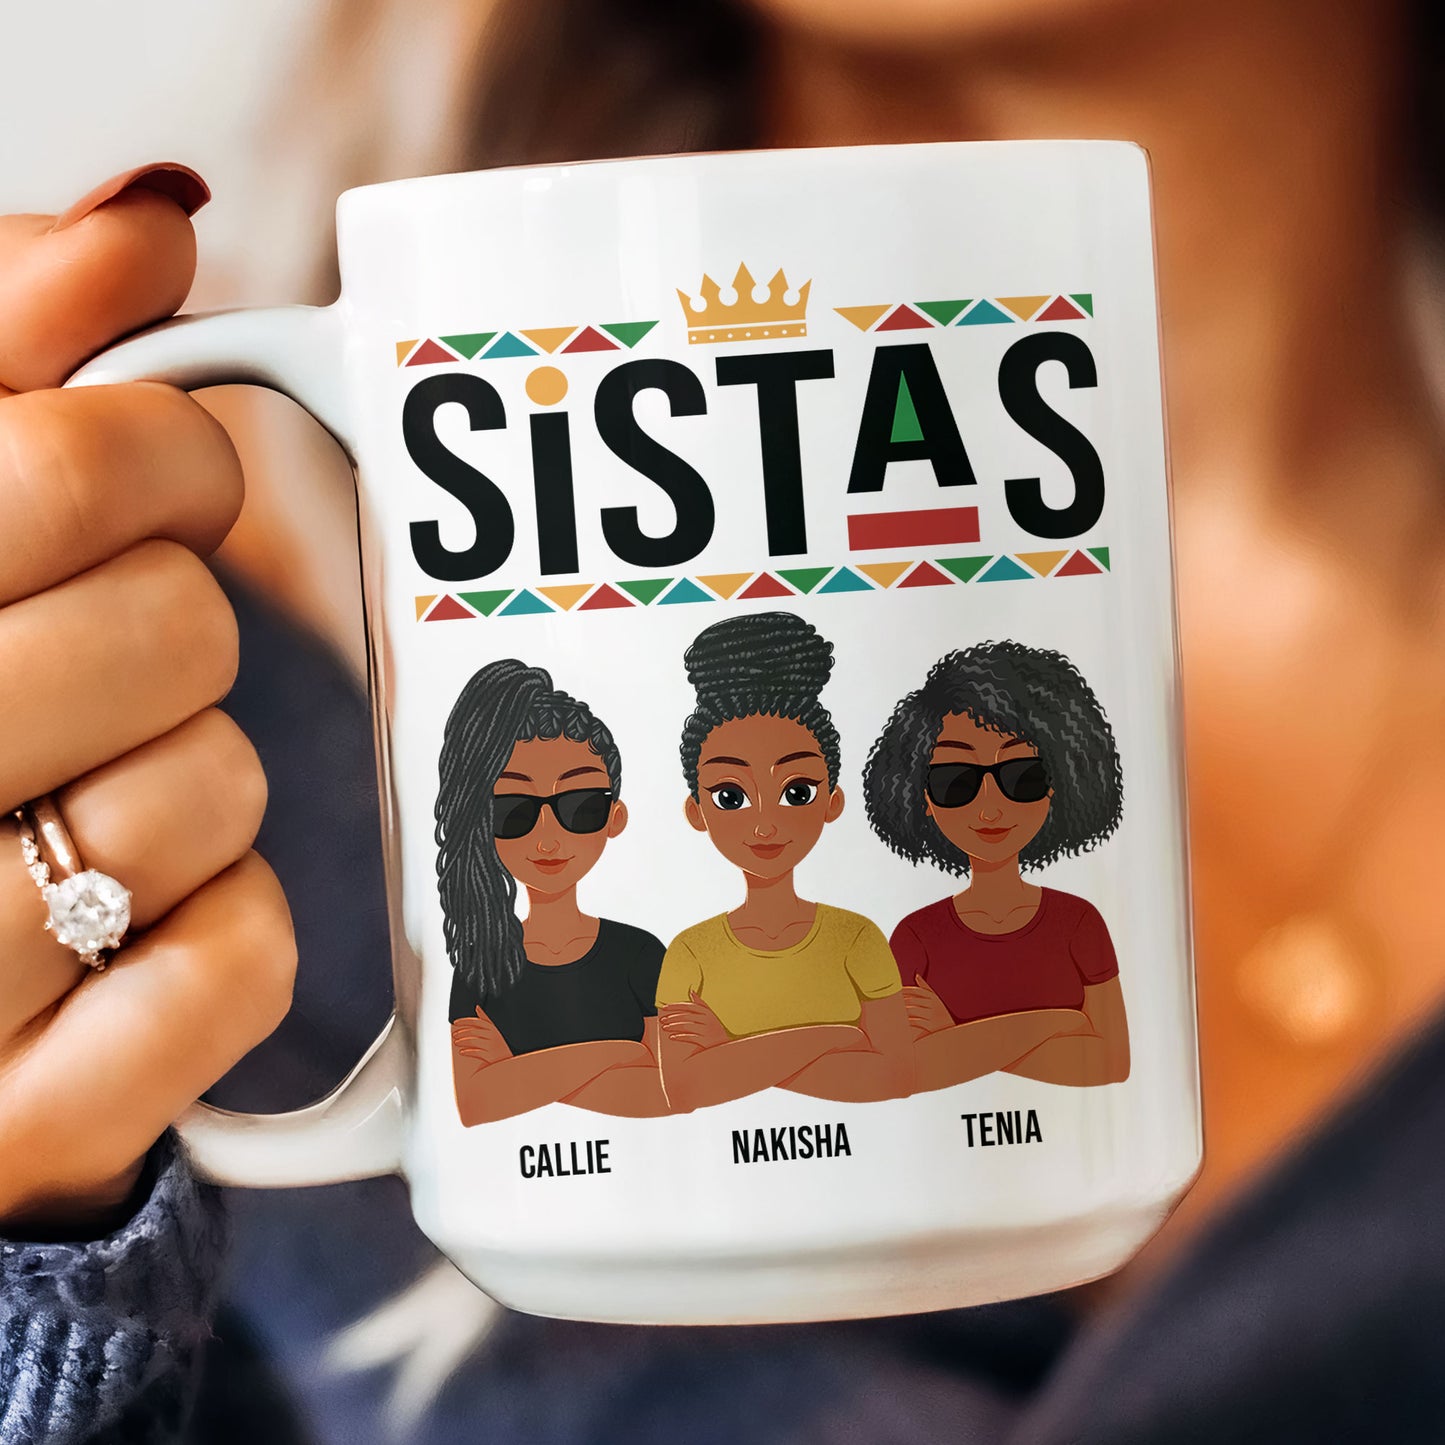 Sistas - New Version - Personalized Mug